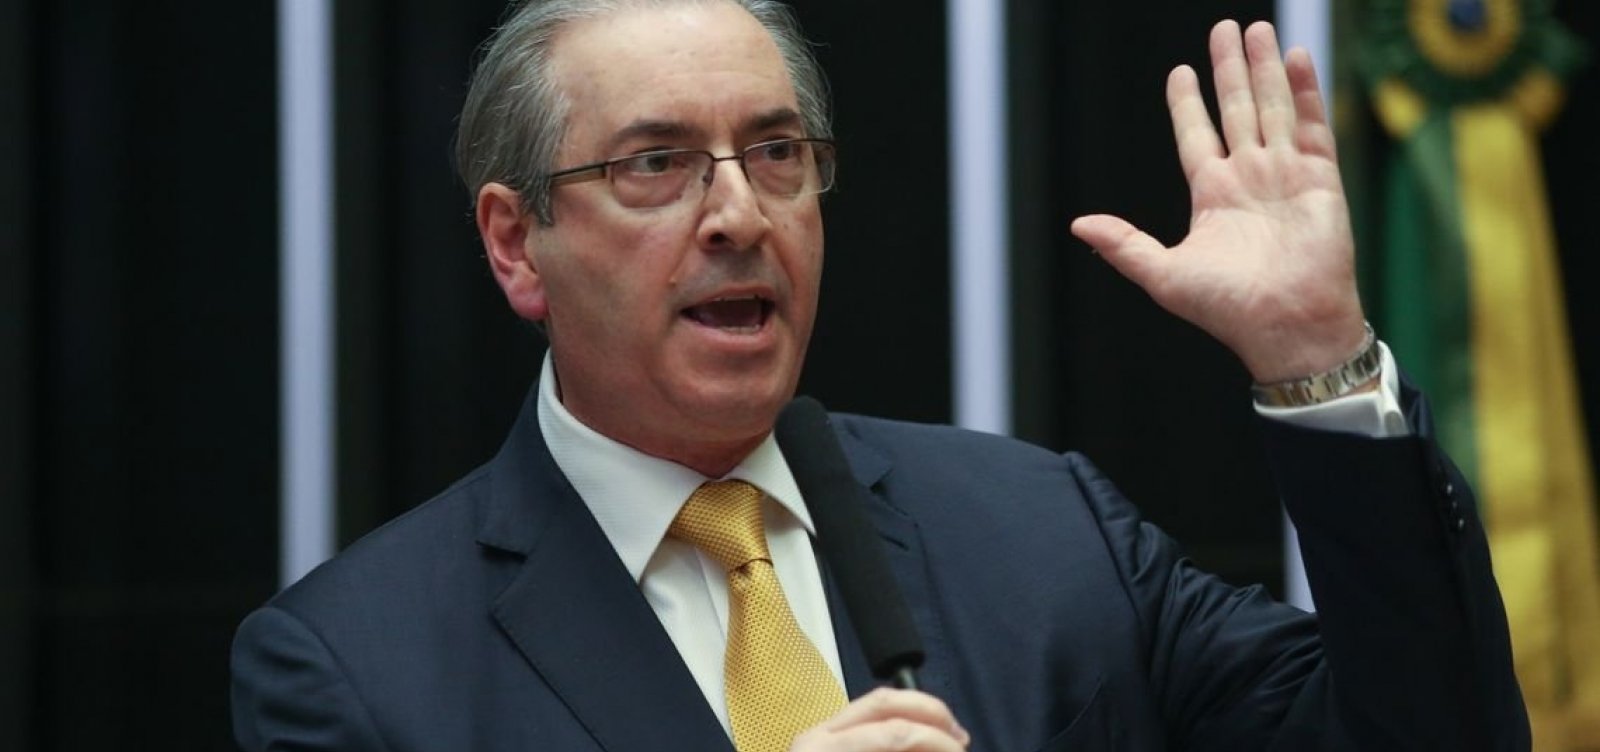 Fachin abre inquérito para apurar se Cunha comprou votos na eleição à presidência da Câmara